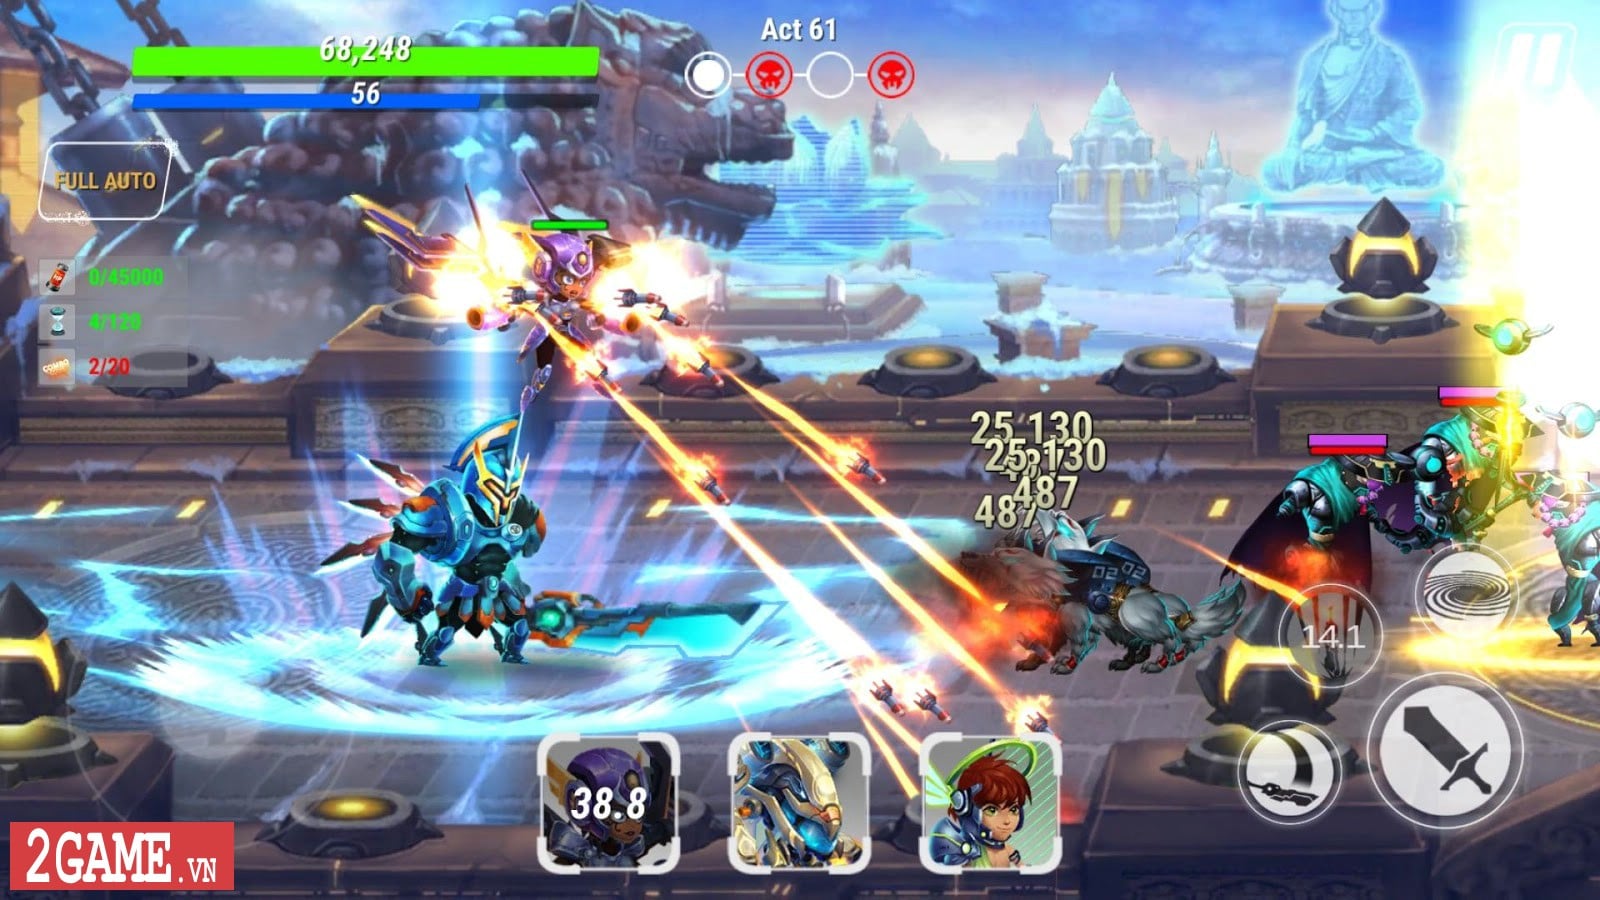 2game-Heroes-Infinity-mobile-3.jpg (1600×900)